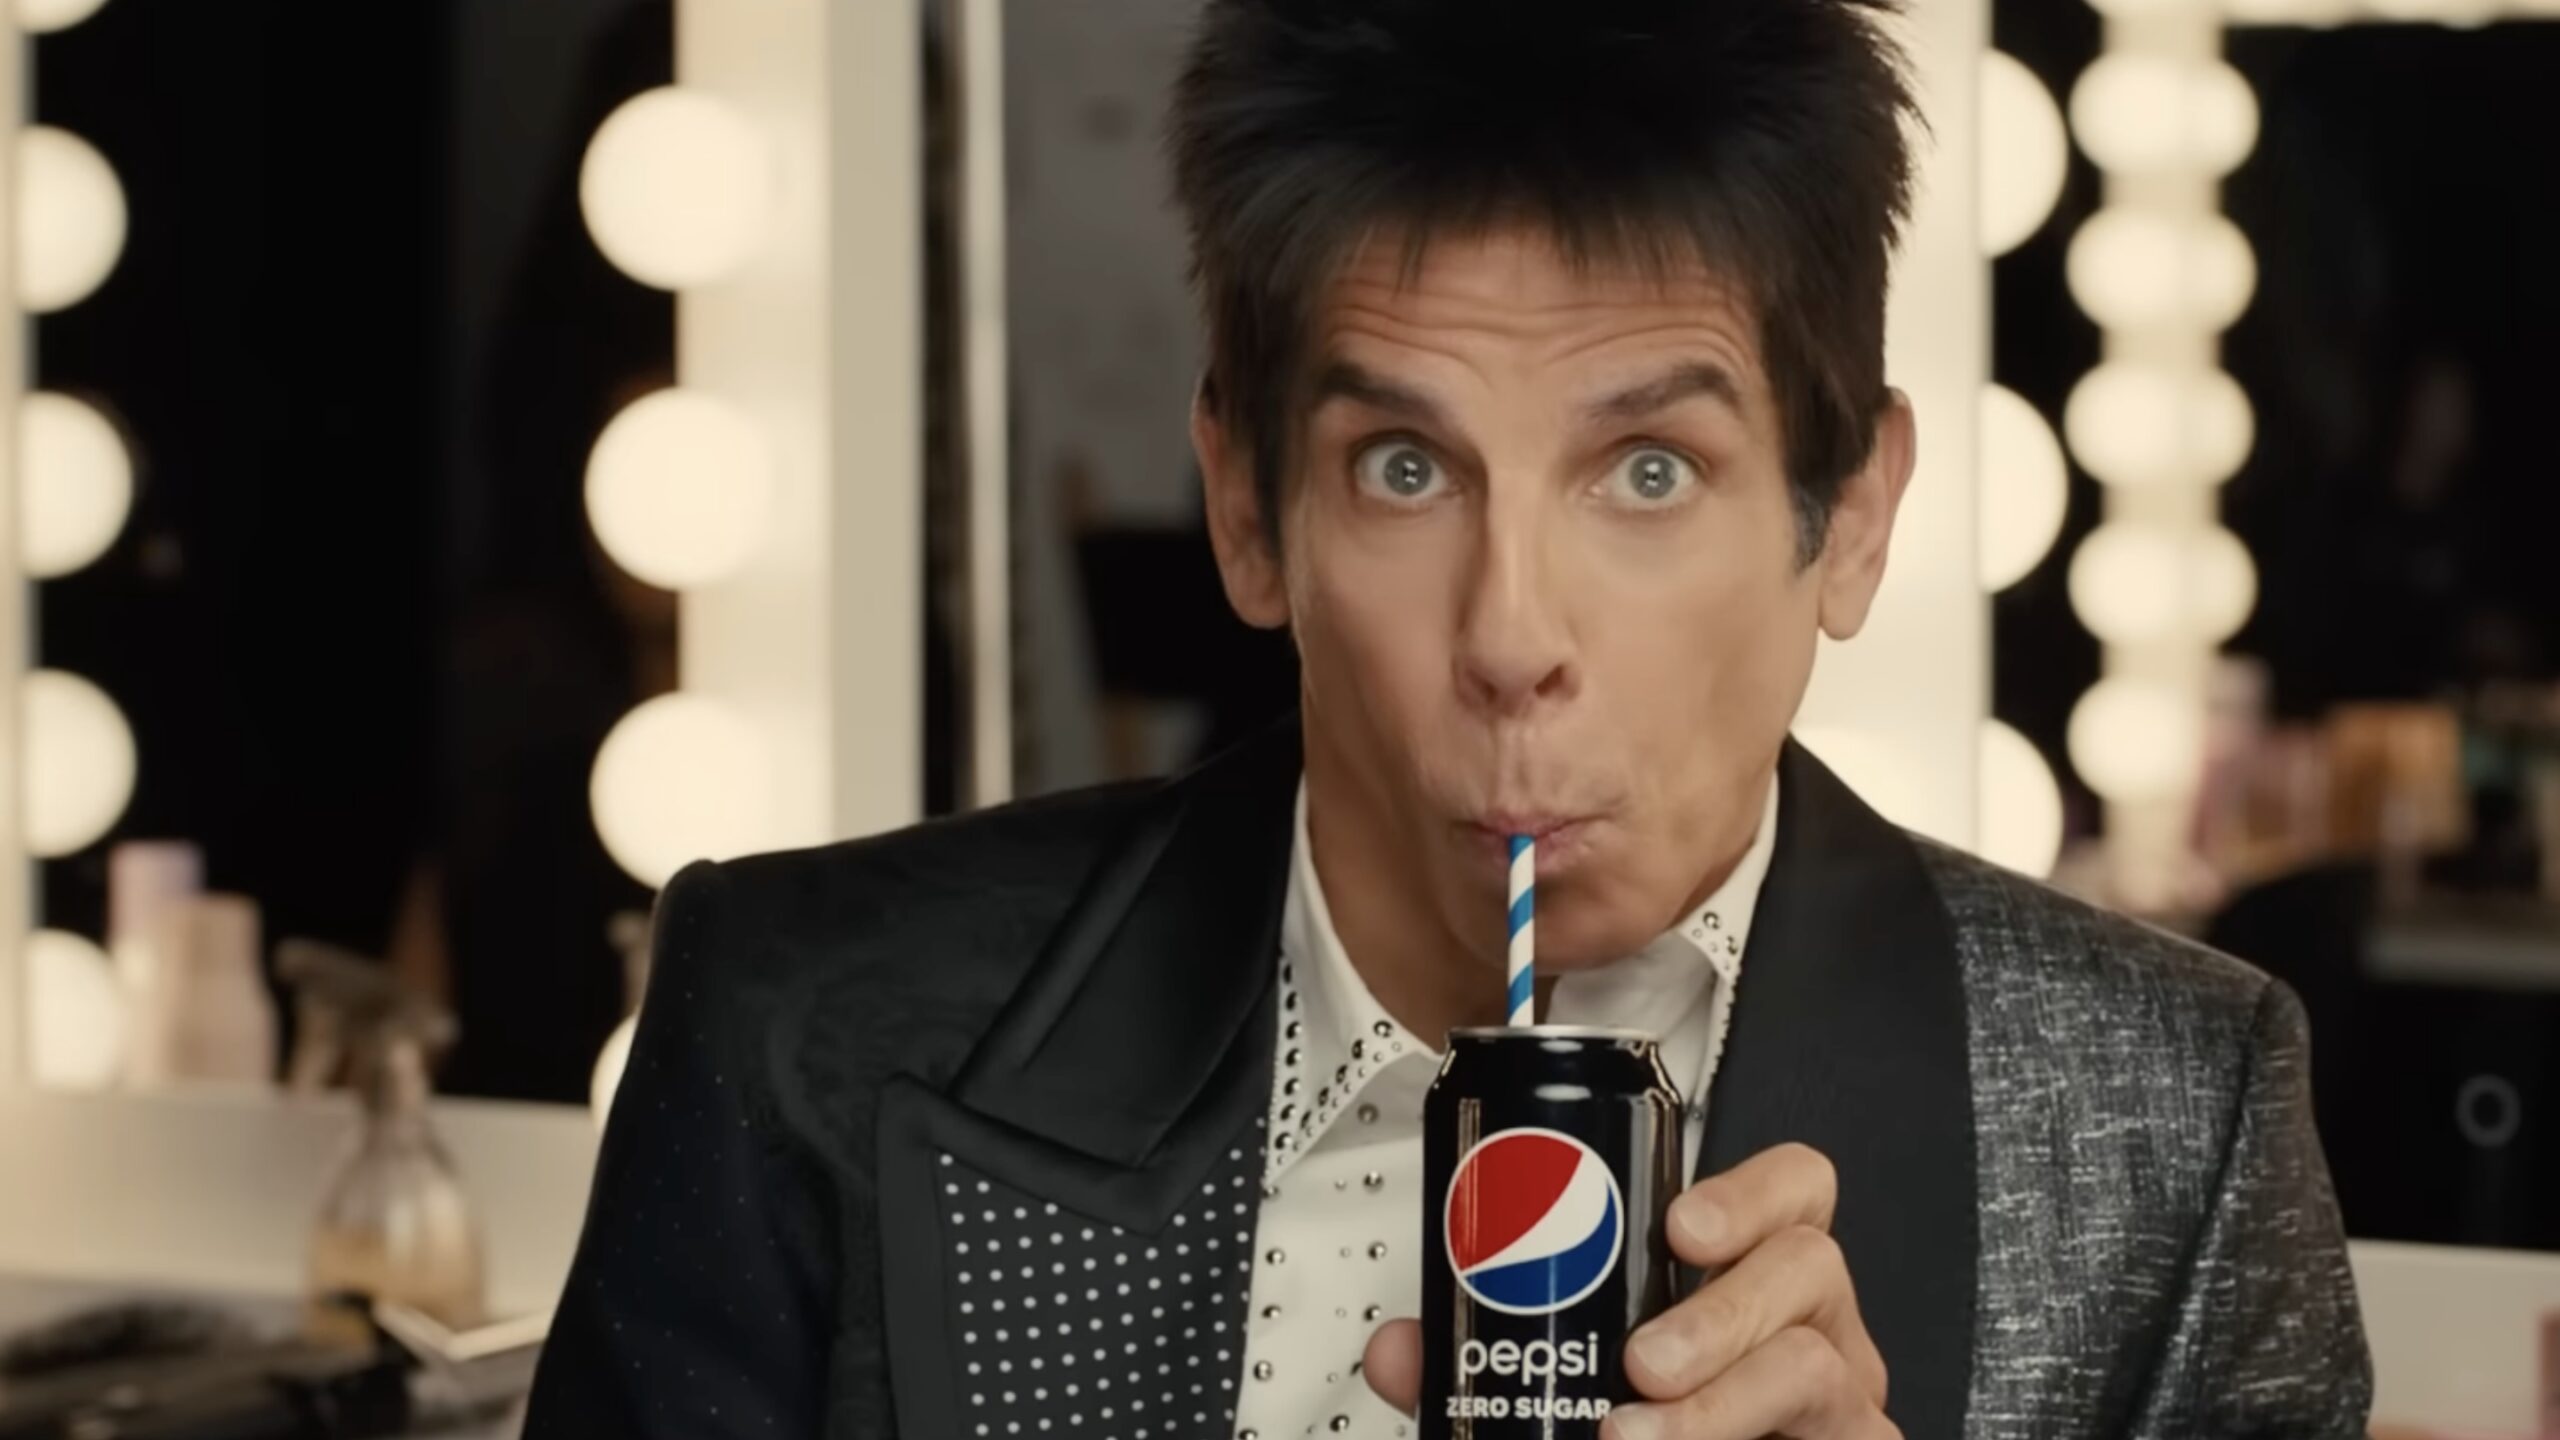 Ben Stiller in the Pepsi Super Bowl 57 commercial.